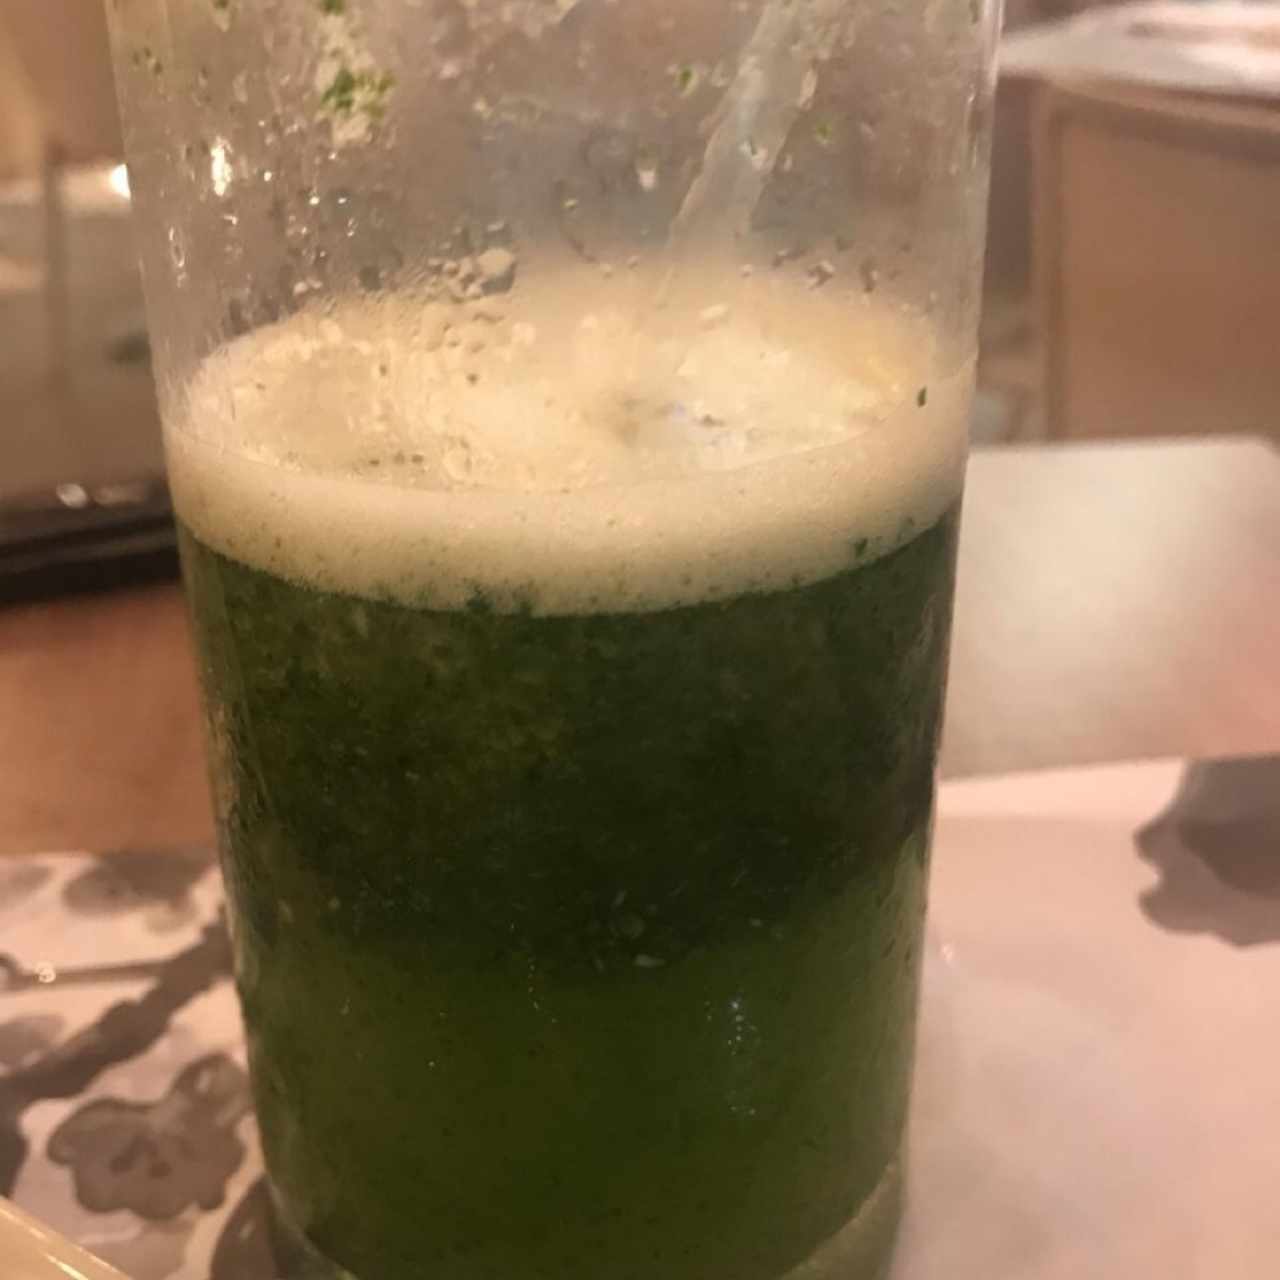 limonada con hierbabuena